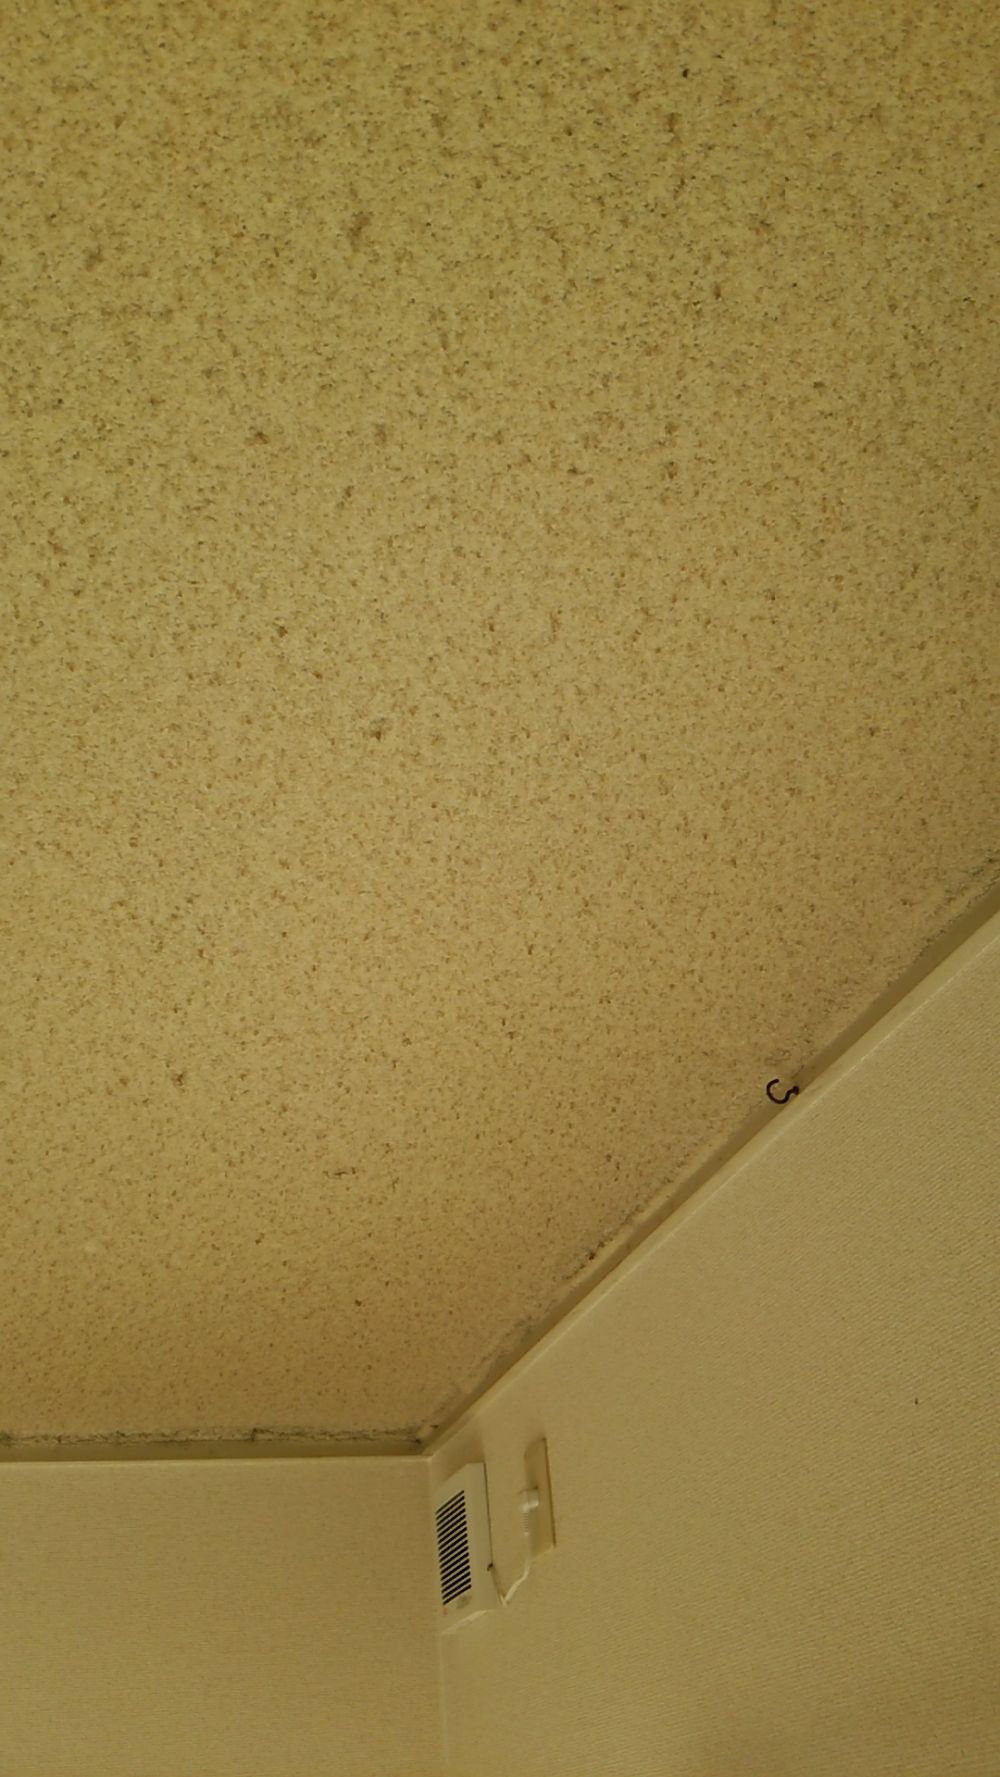 天井の土壁が黄ばんでいるので補修したい リフォームのことなら家仲間コム